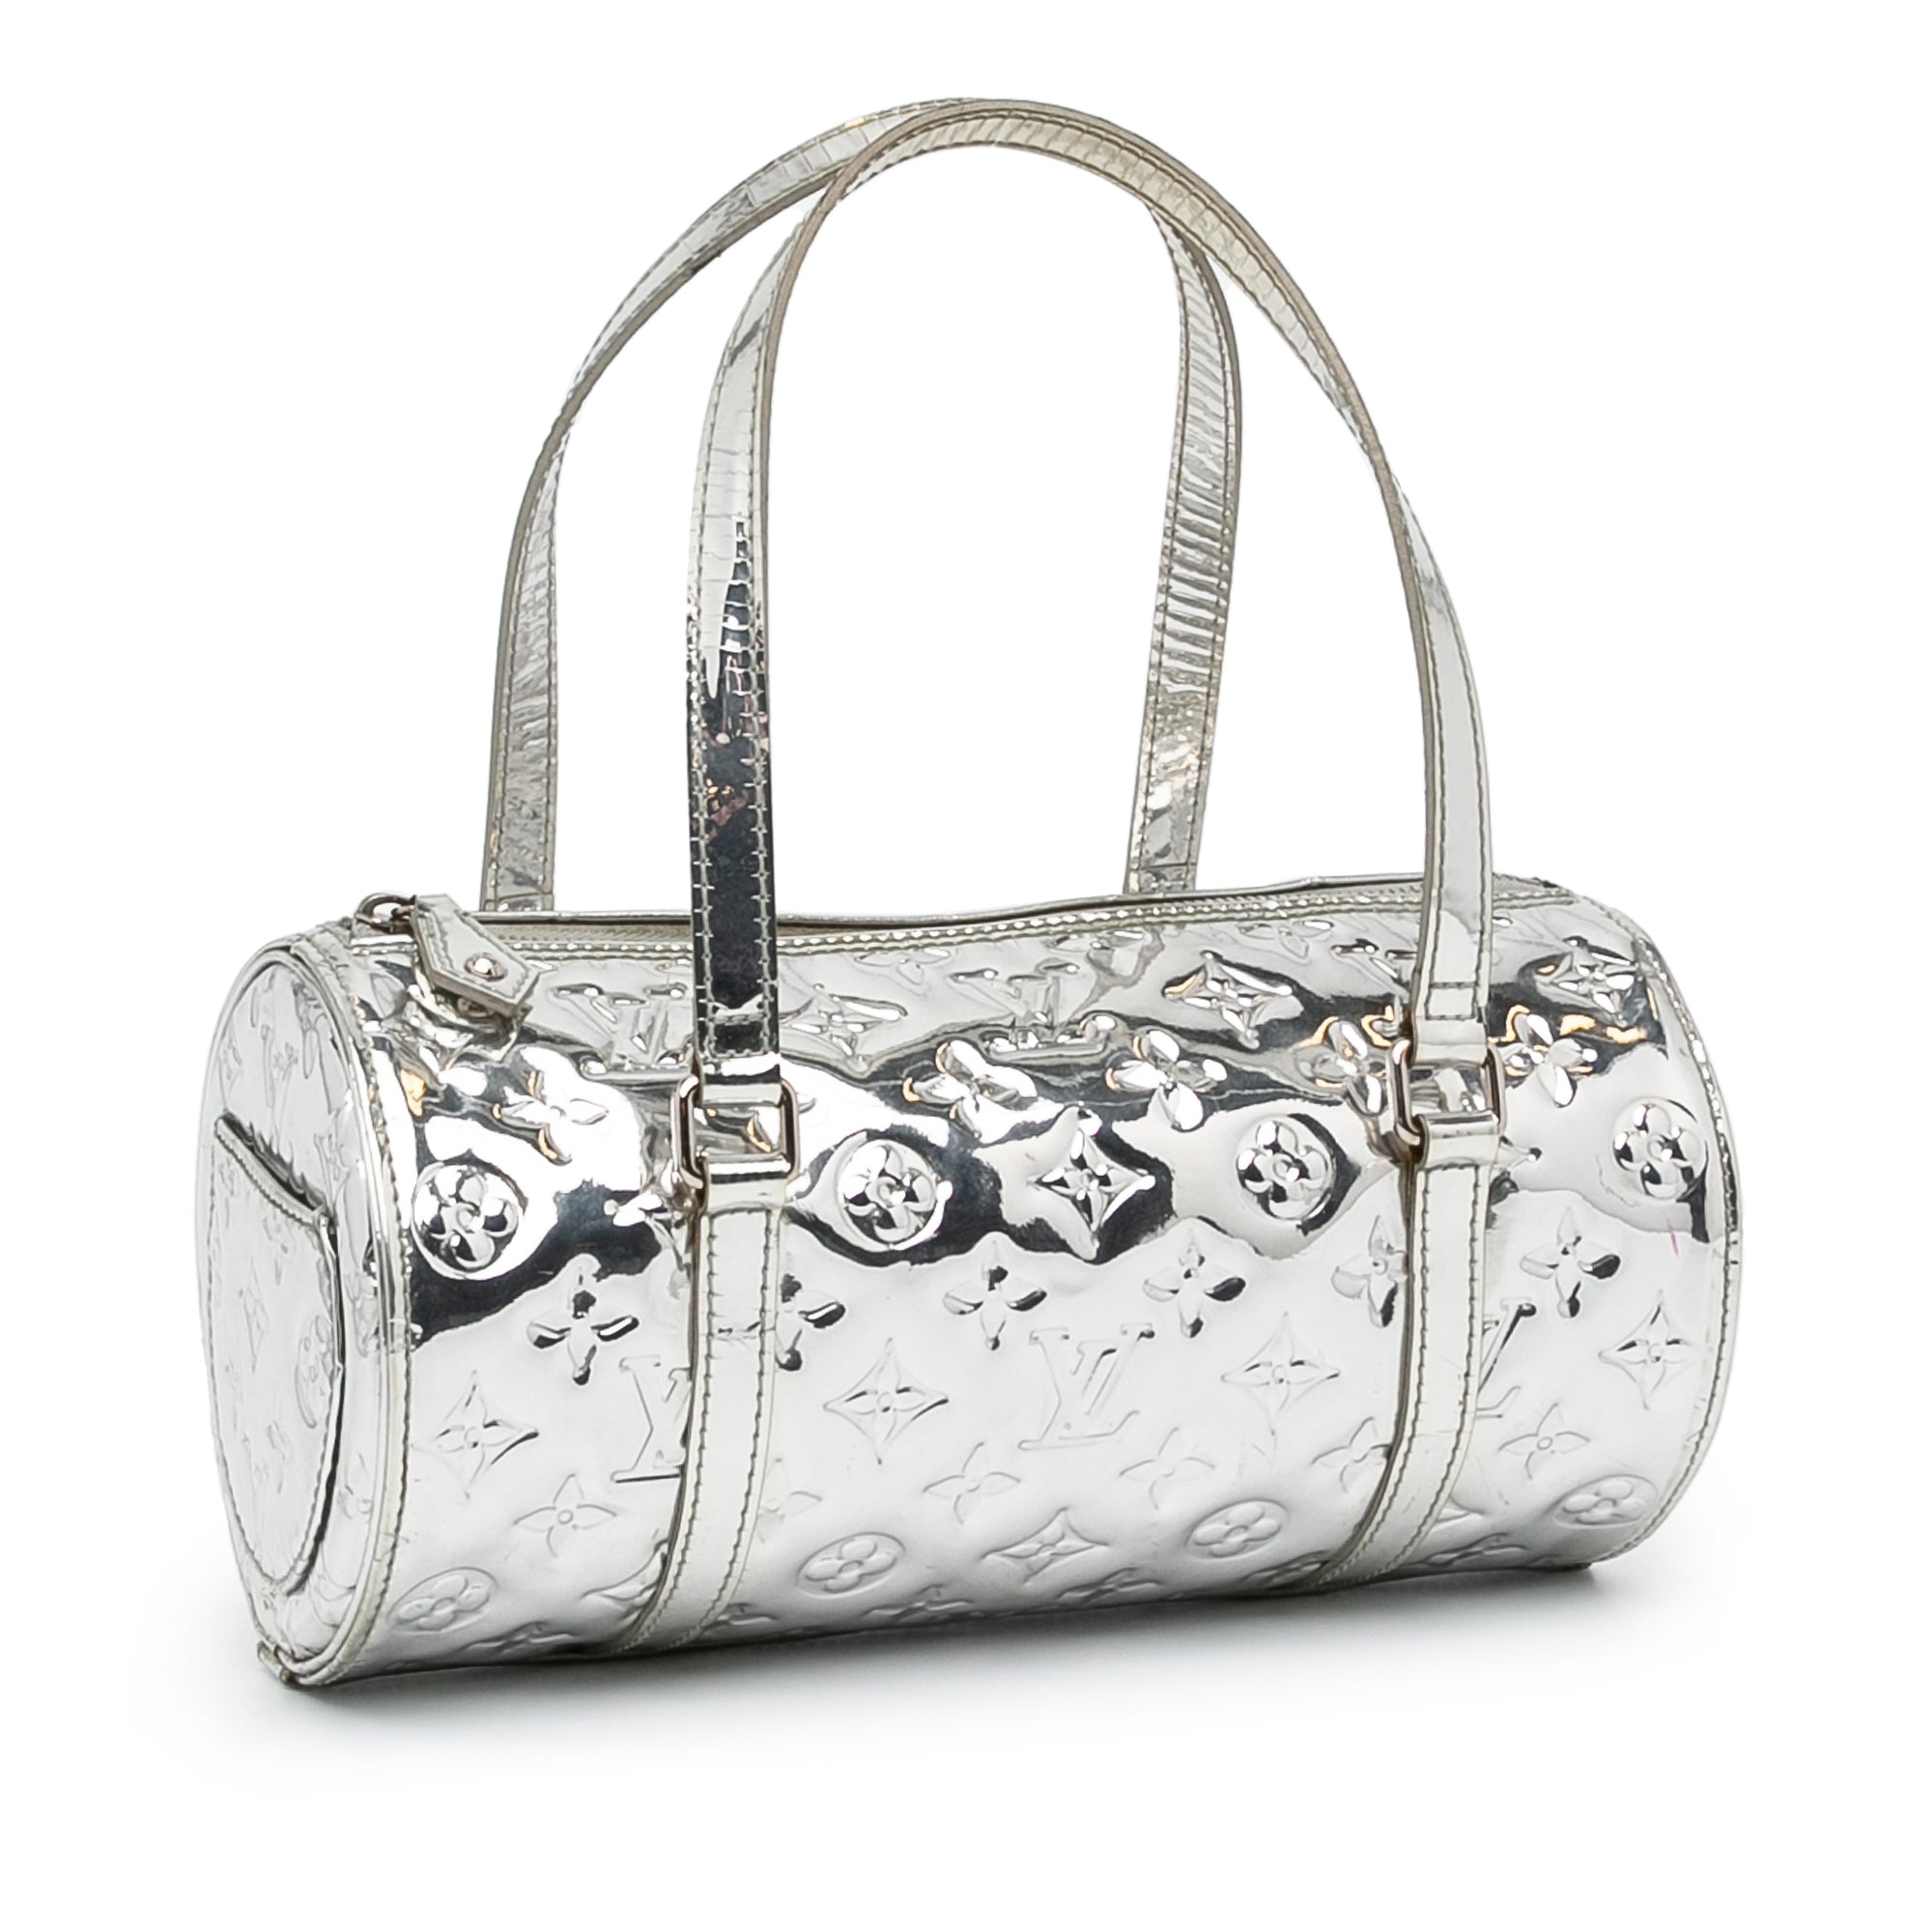 FWRD Renew Louis Vuitton Monogram Miroir Papillon Handbag in Silver